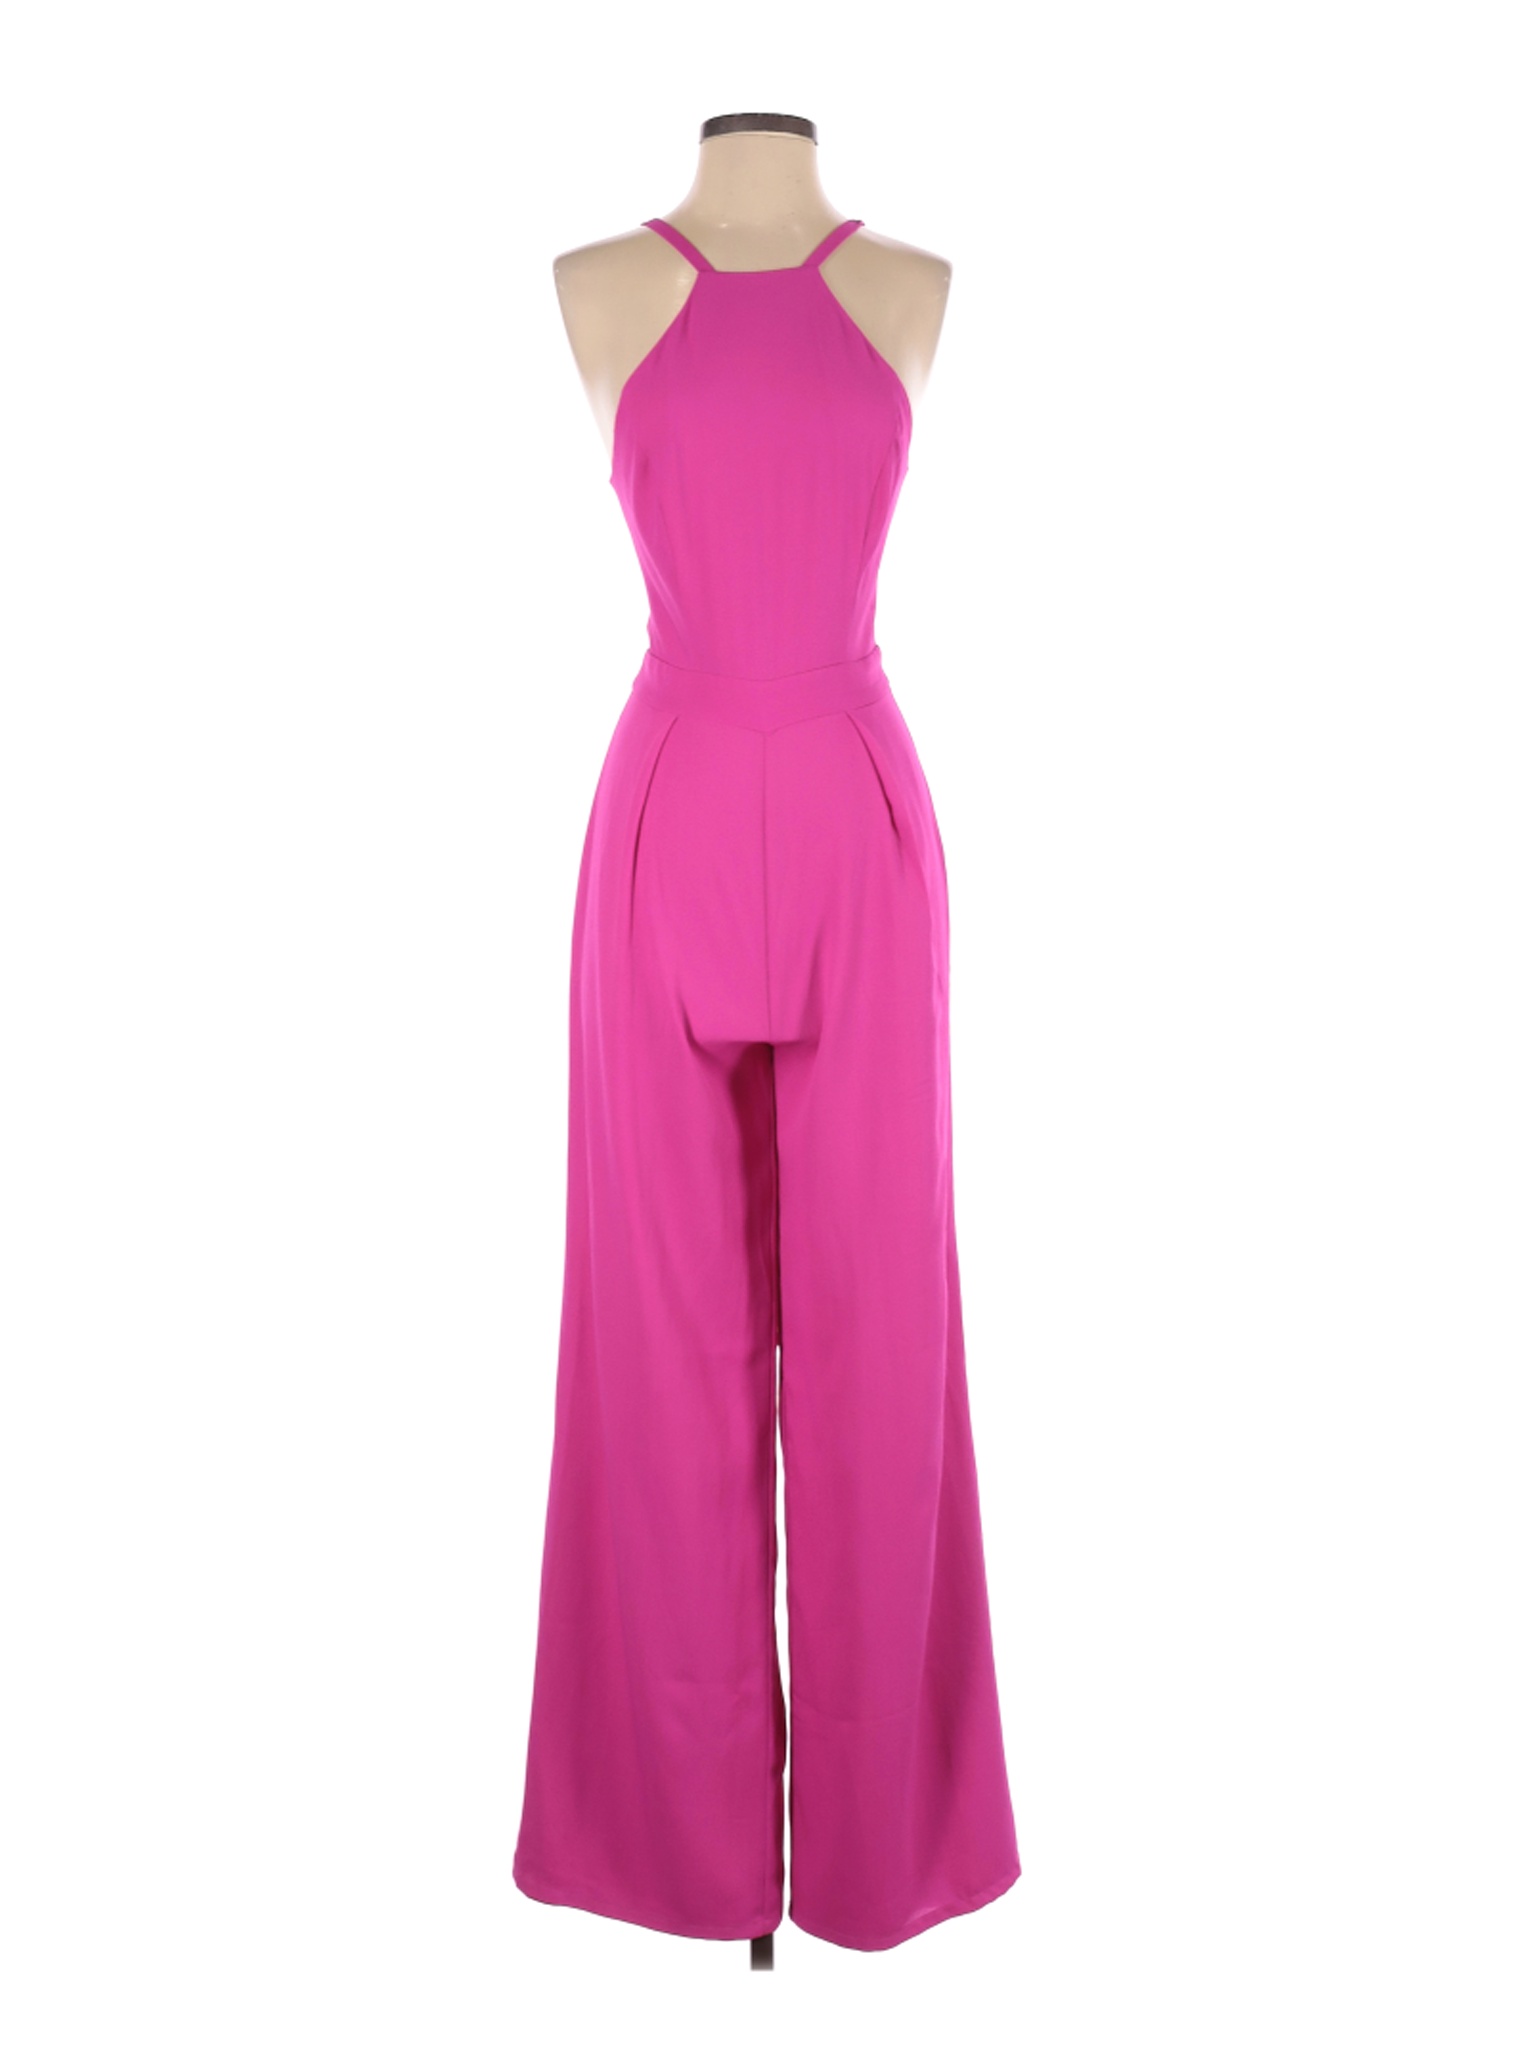 Bebe Women Pink Jumpsuit 2 | eBay